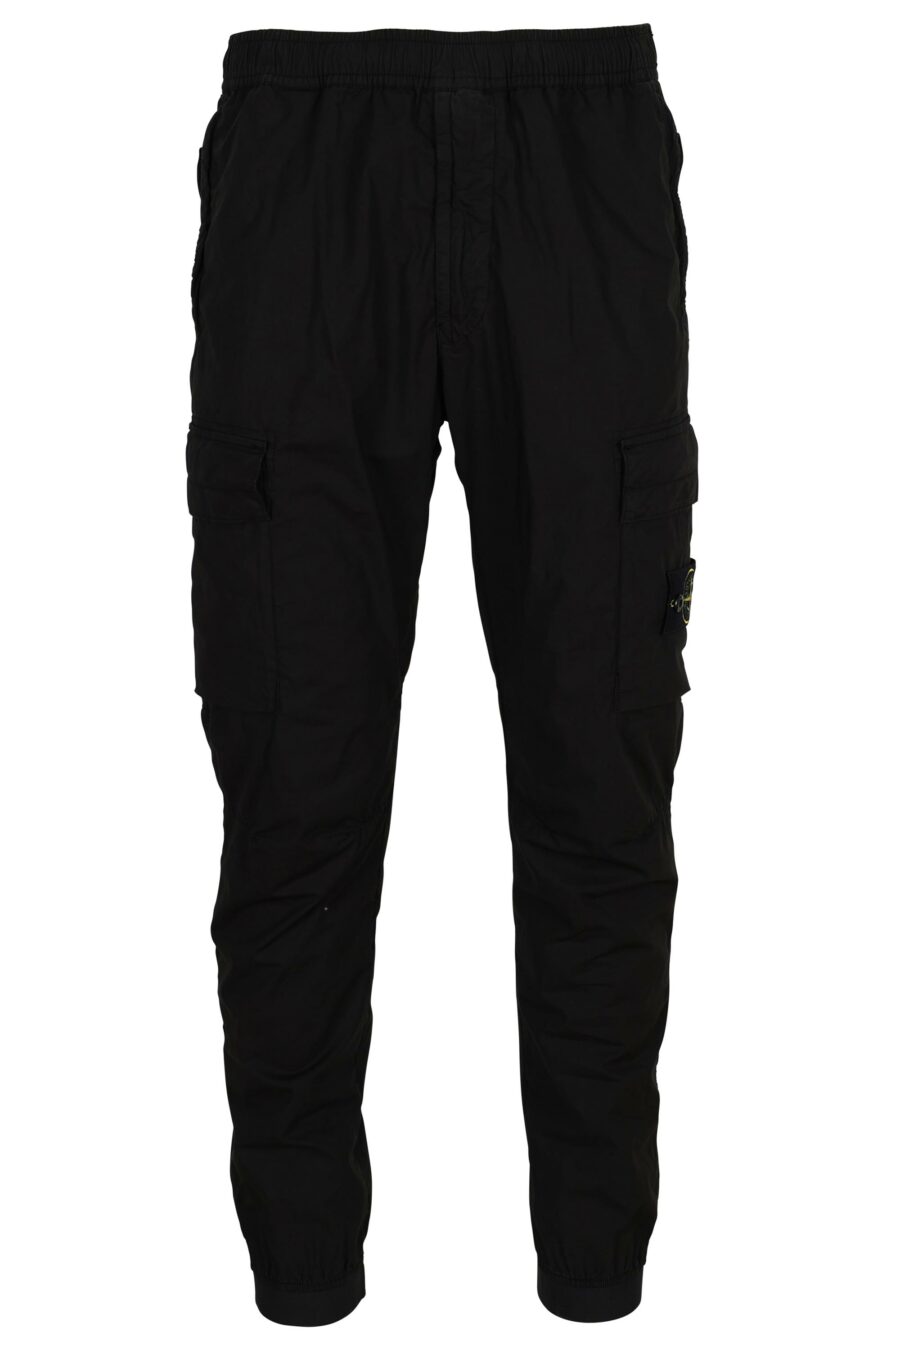 Pantalon fuselé noir avec patch boussole logo - 8052572851124